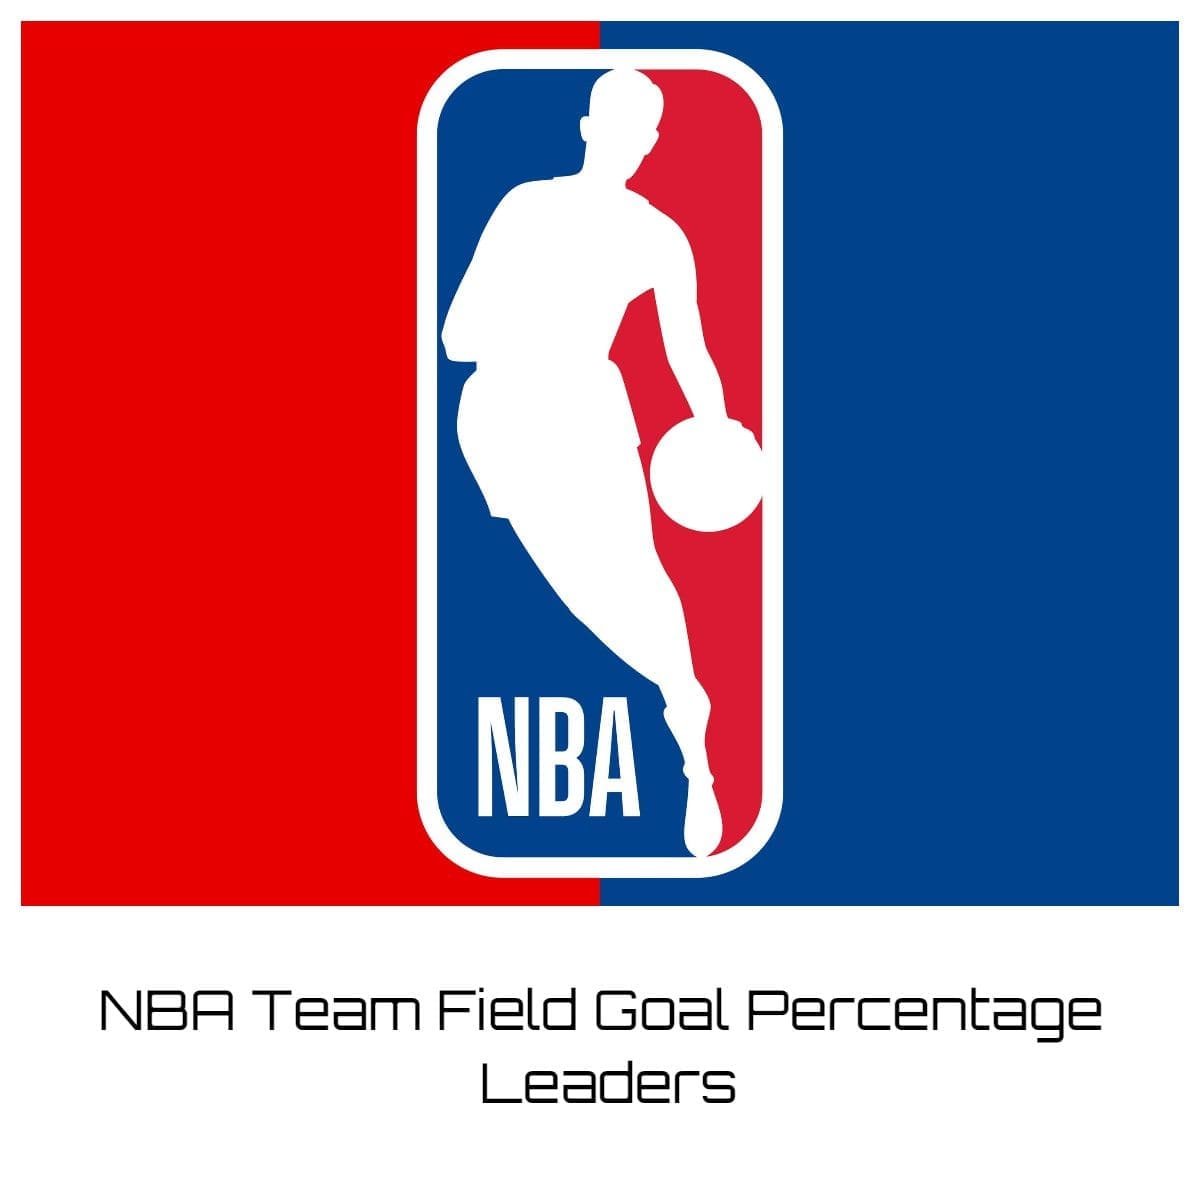 NBA Team Field Goal Percentage Leaders